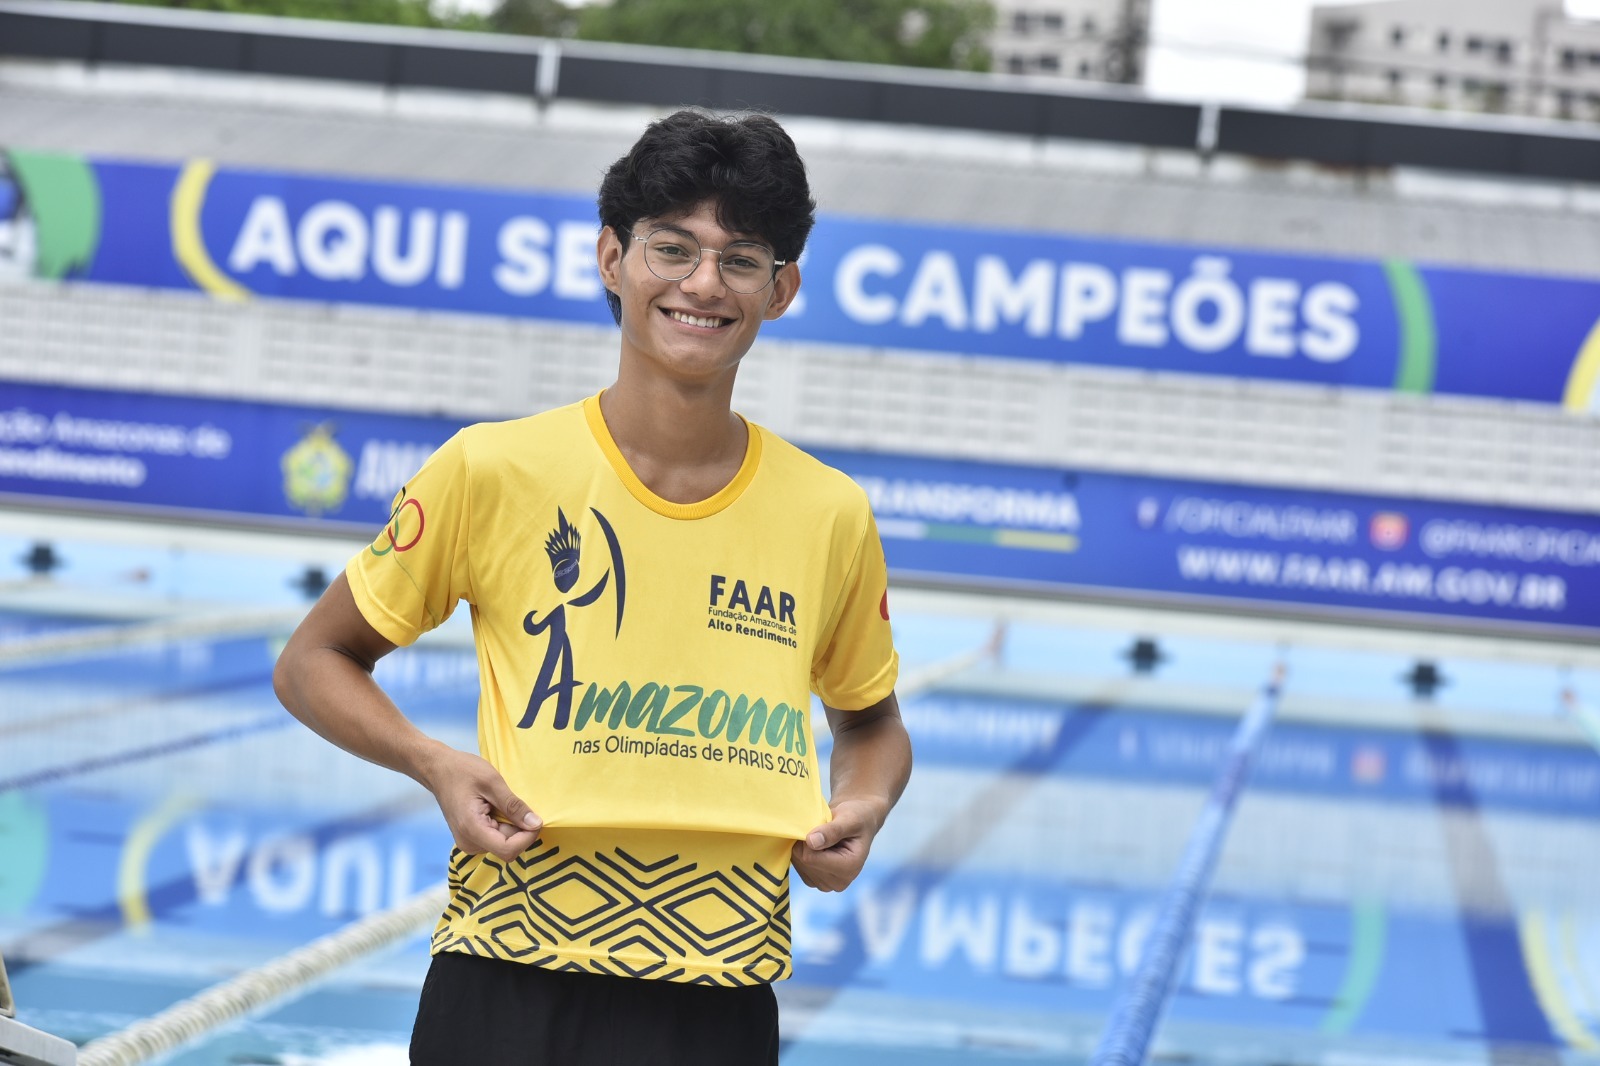 Caio Arcos quebra recorde de 1998 nos 200 metros nado livre e se torna o novo recordista do Amazonas - Foto: Divulgação/ Mauro Neto/Sedel e Barbara Cristina